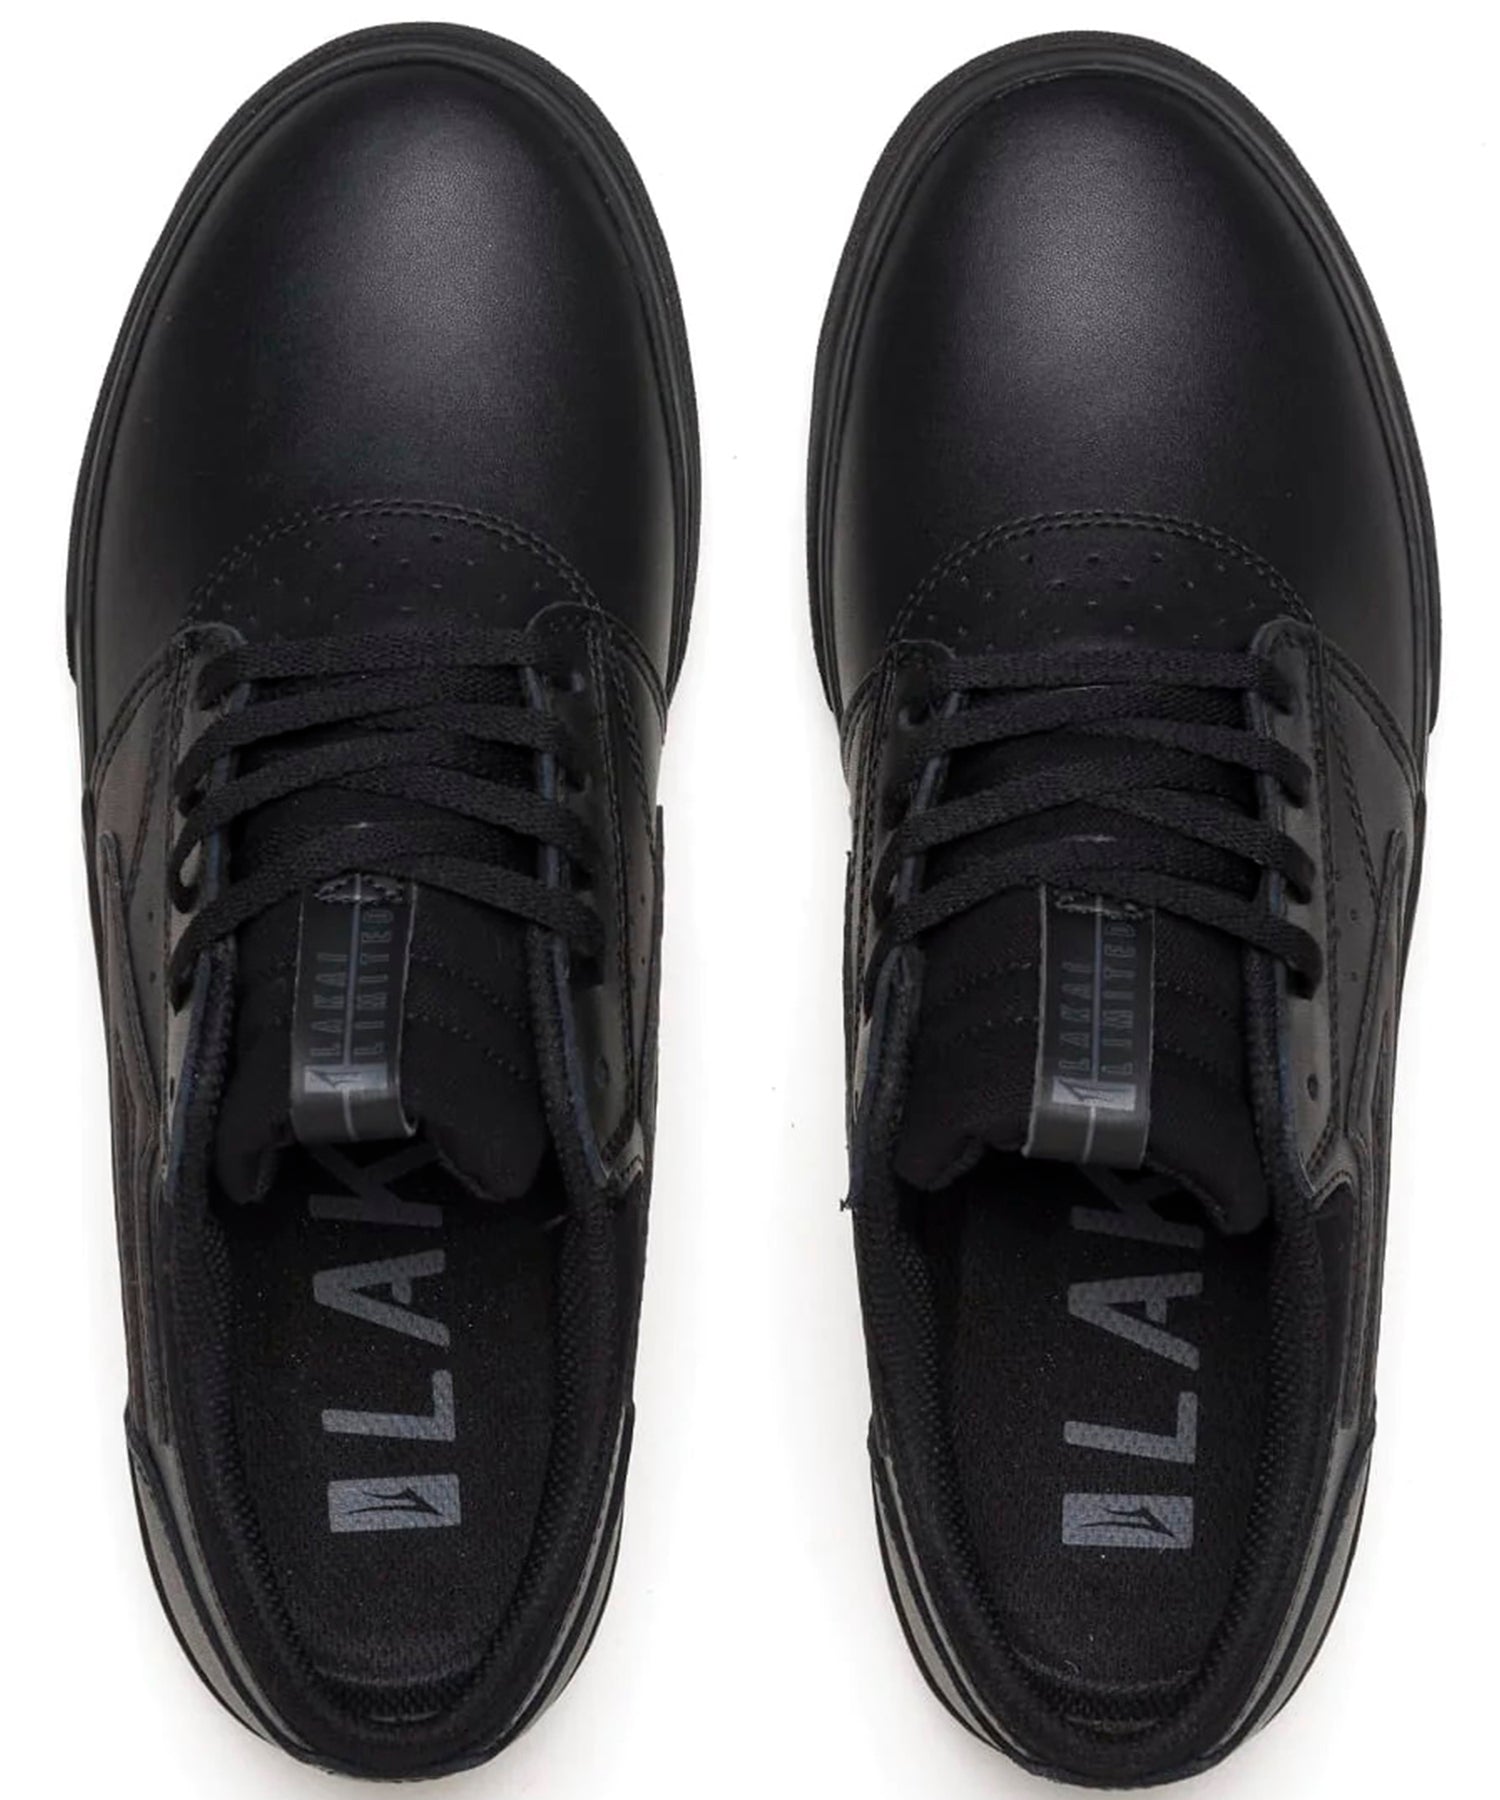 lakai-zapatillas-griffin-color-negro-piel-sintética-construcción-de-puntera-limpia-suela-con-capa-de-absorción-de-impactos